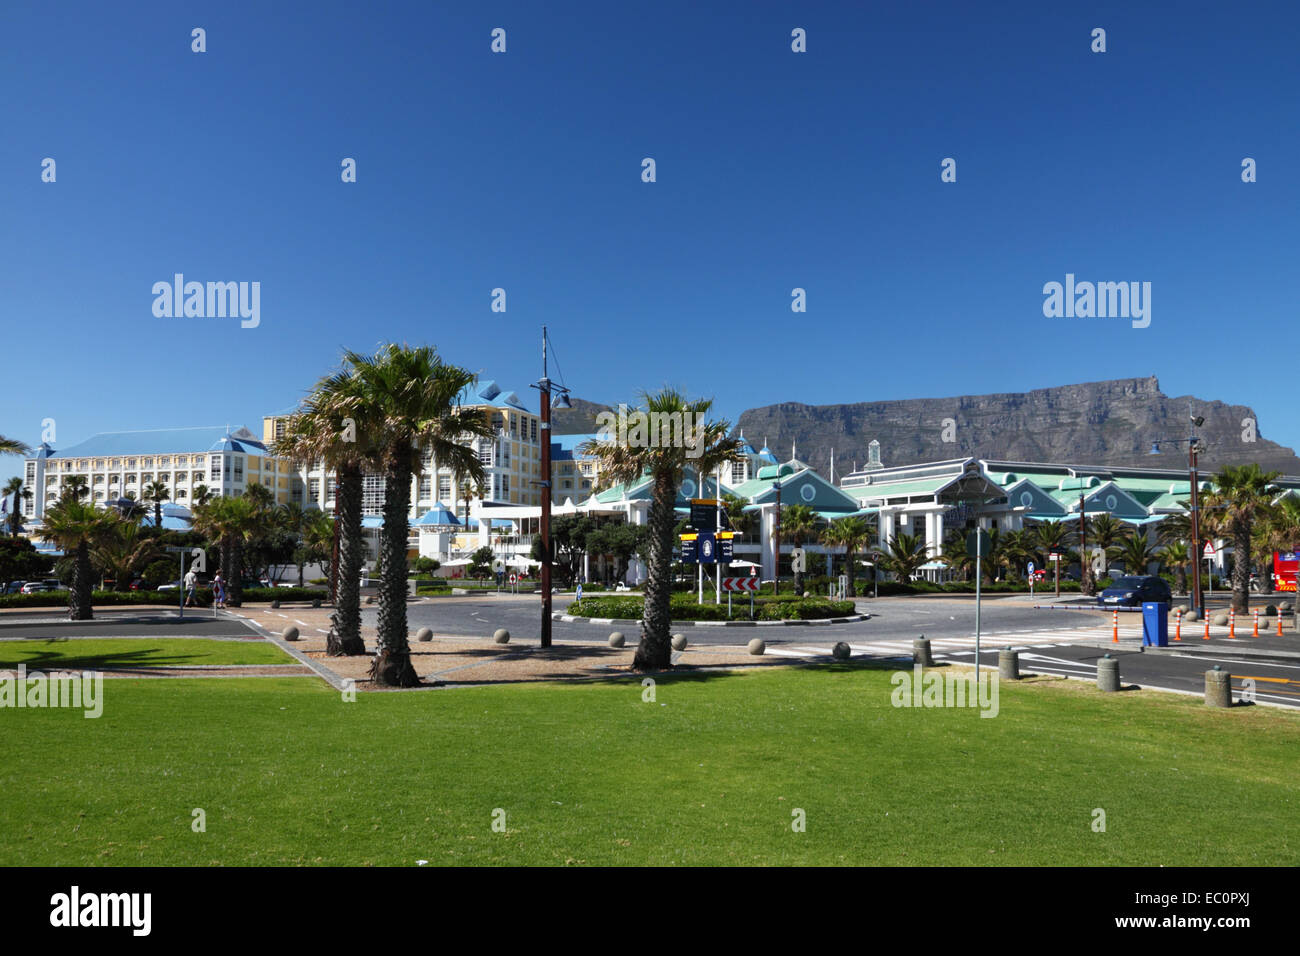 Table Bay Hotel, Victoria und Alfred Waterfront mit Tafelberg im Hintergrund, Cape Town, Südafrika. Stockfoto